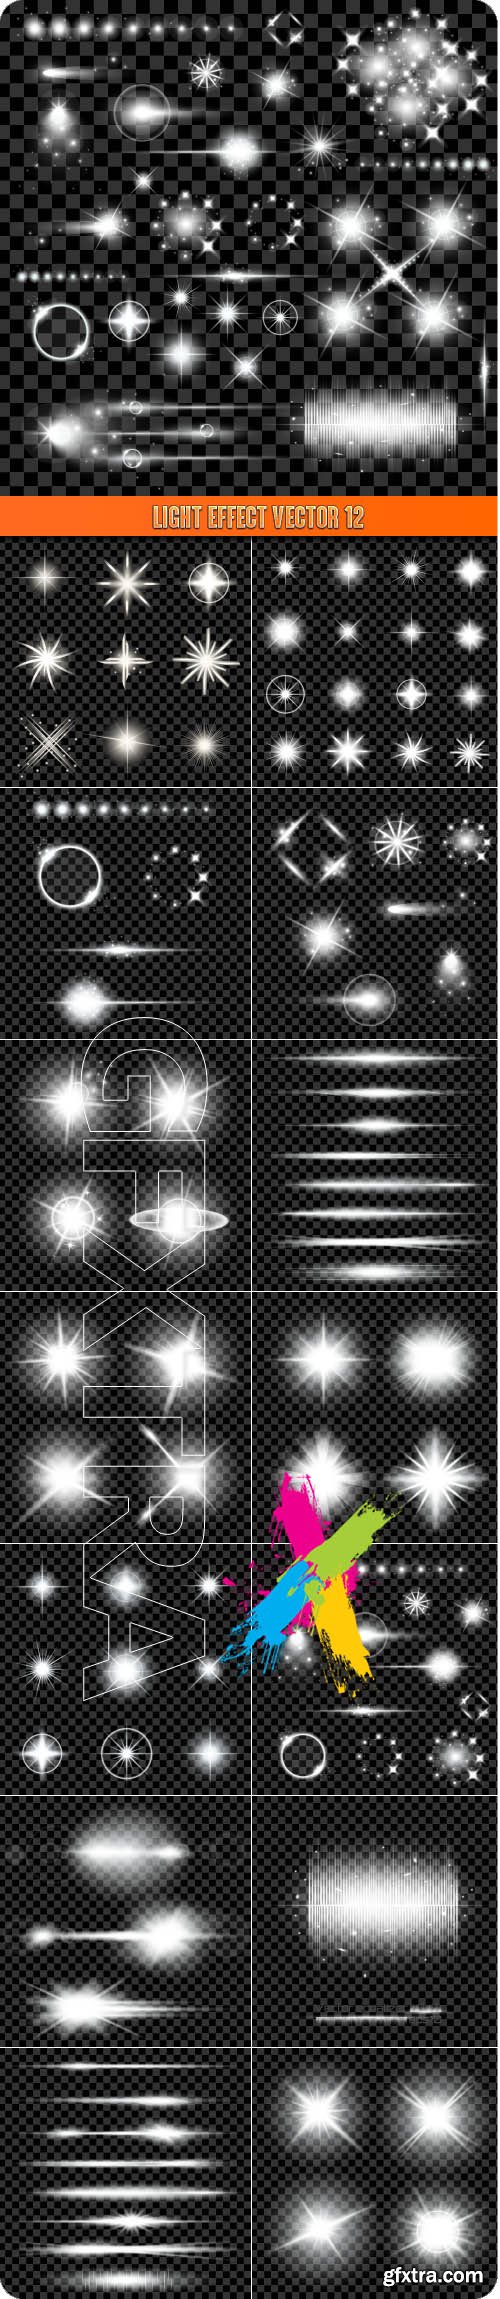 Light effect vector 12